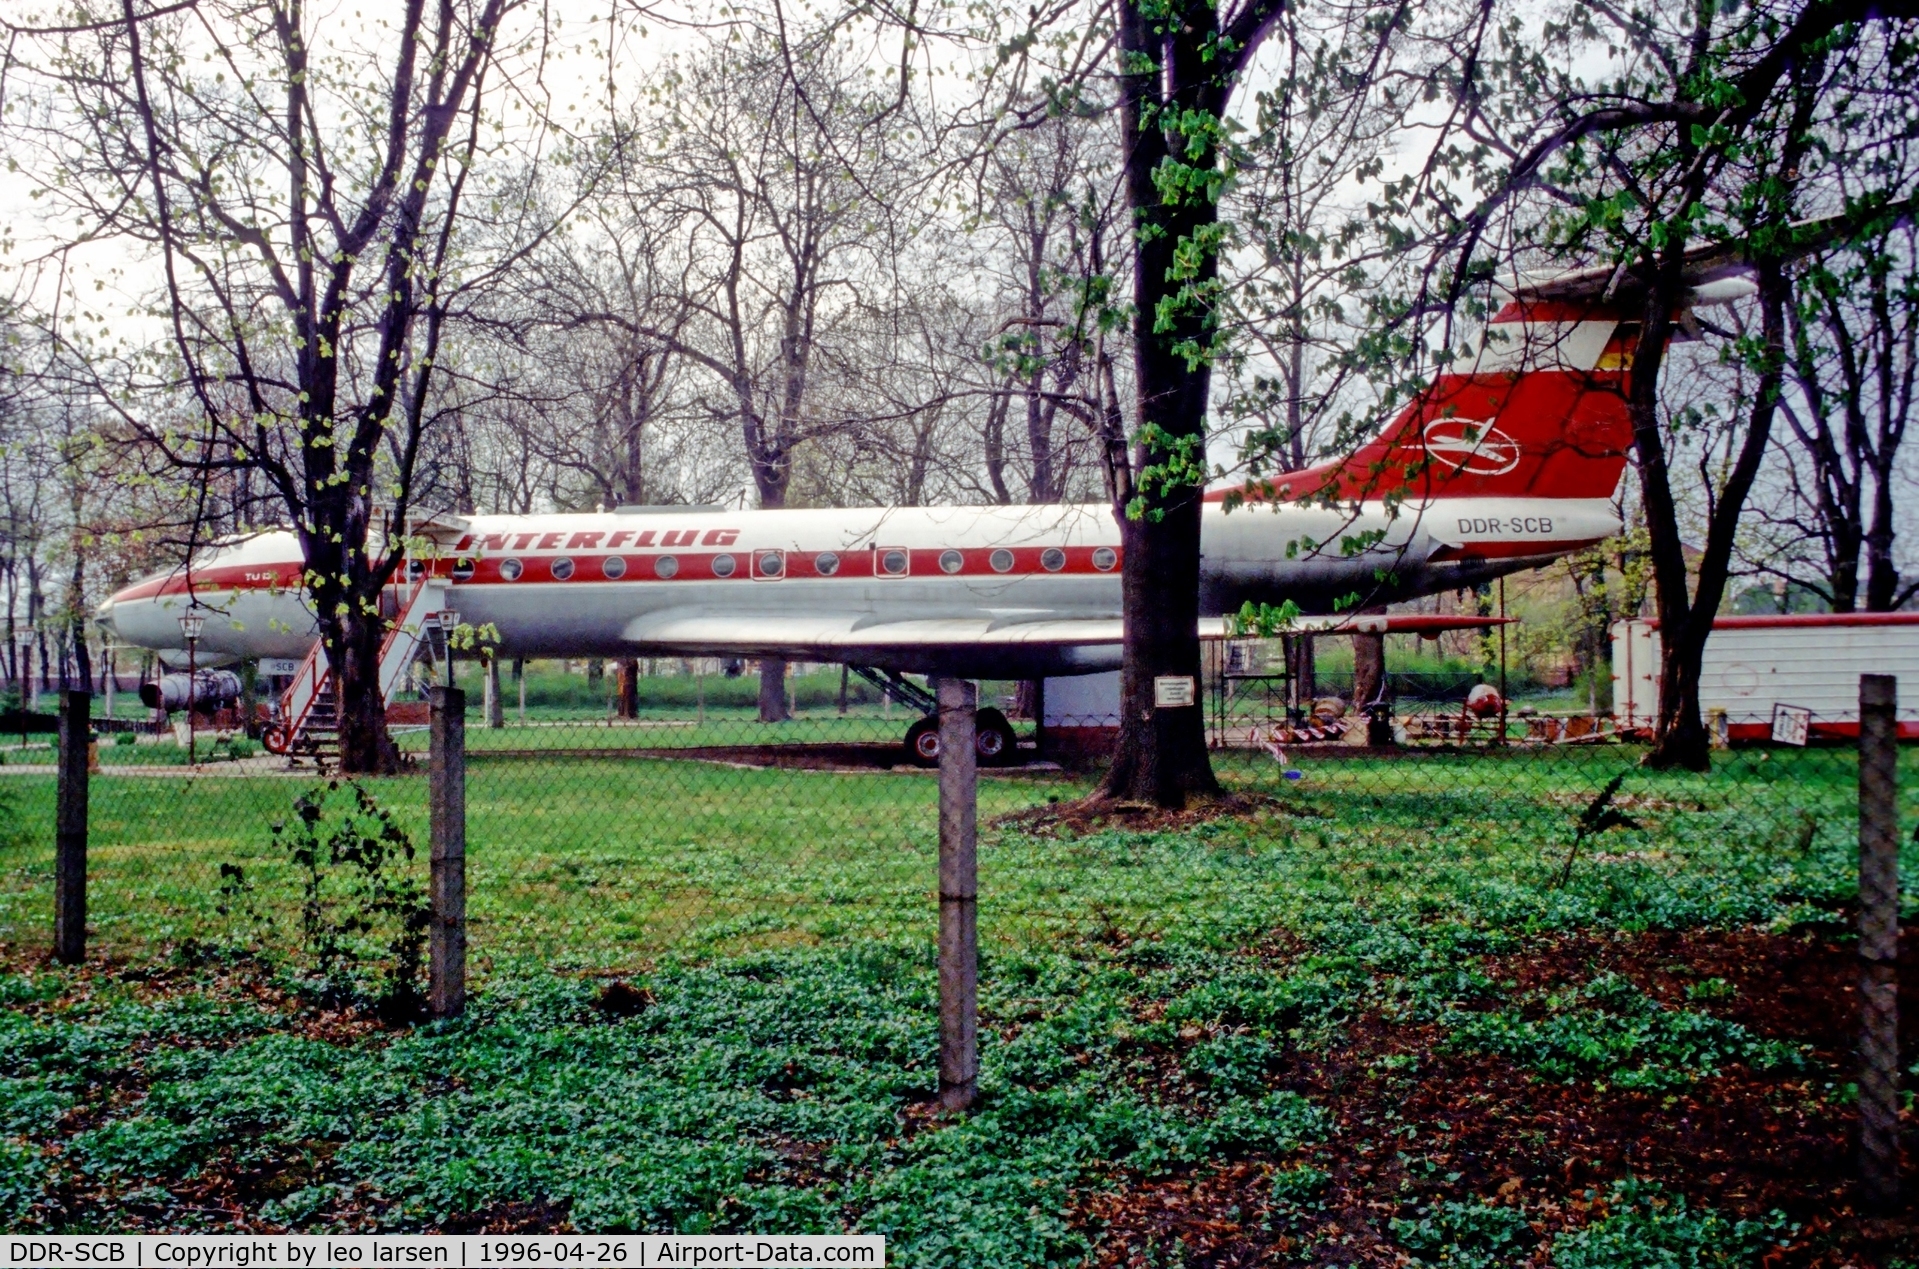 DDR-SCB, 1968 Tupolev Tu-134 C/N 8350503, Oschersleben Germany 26.4.96